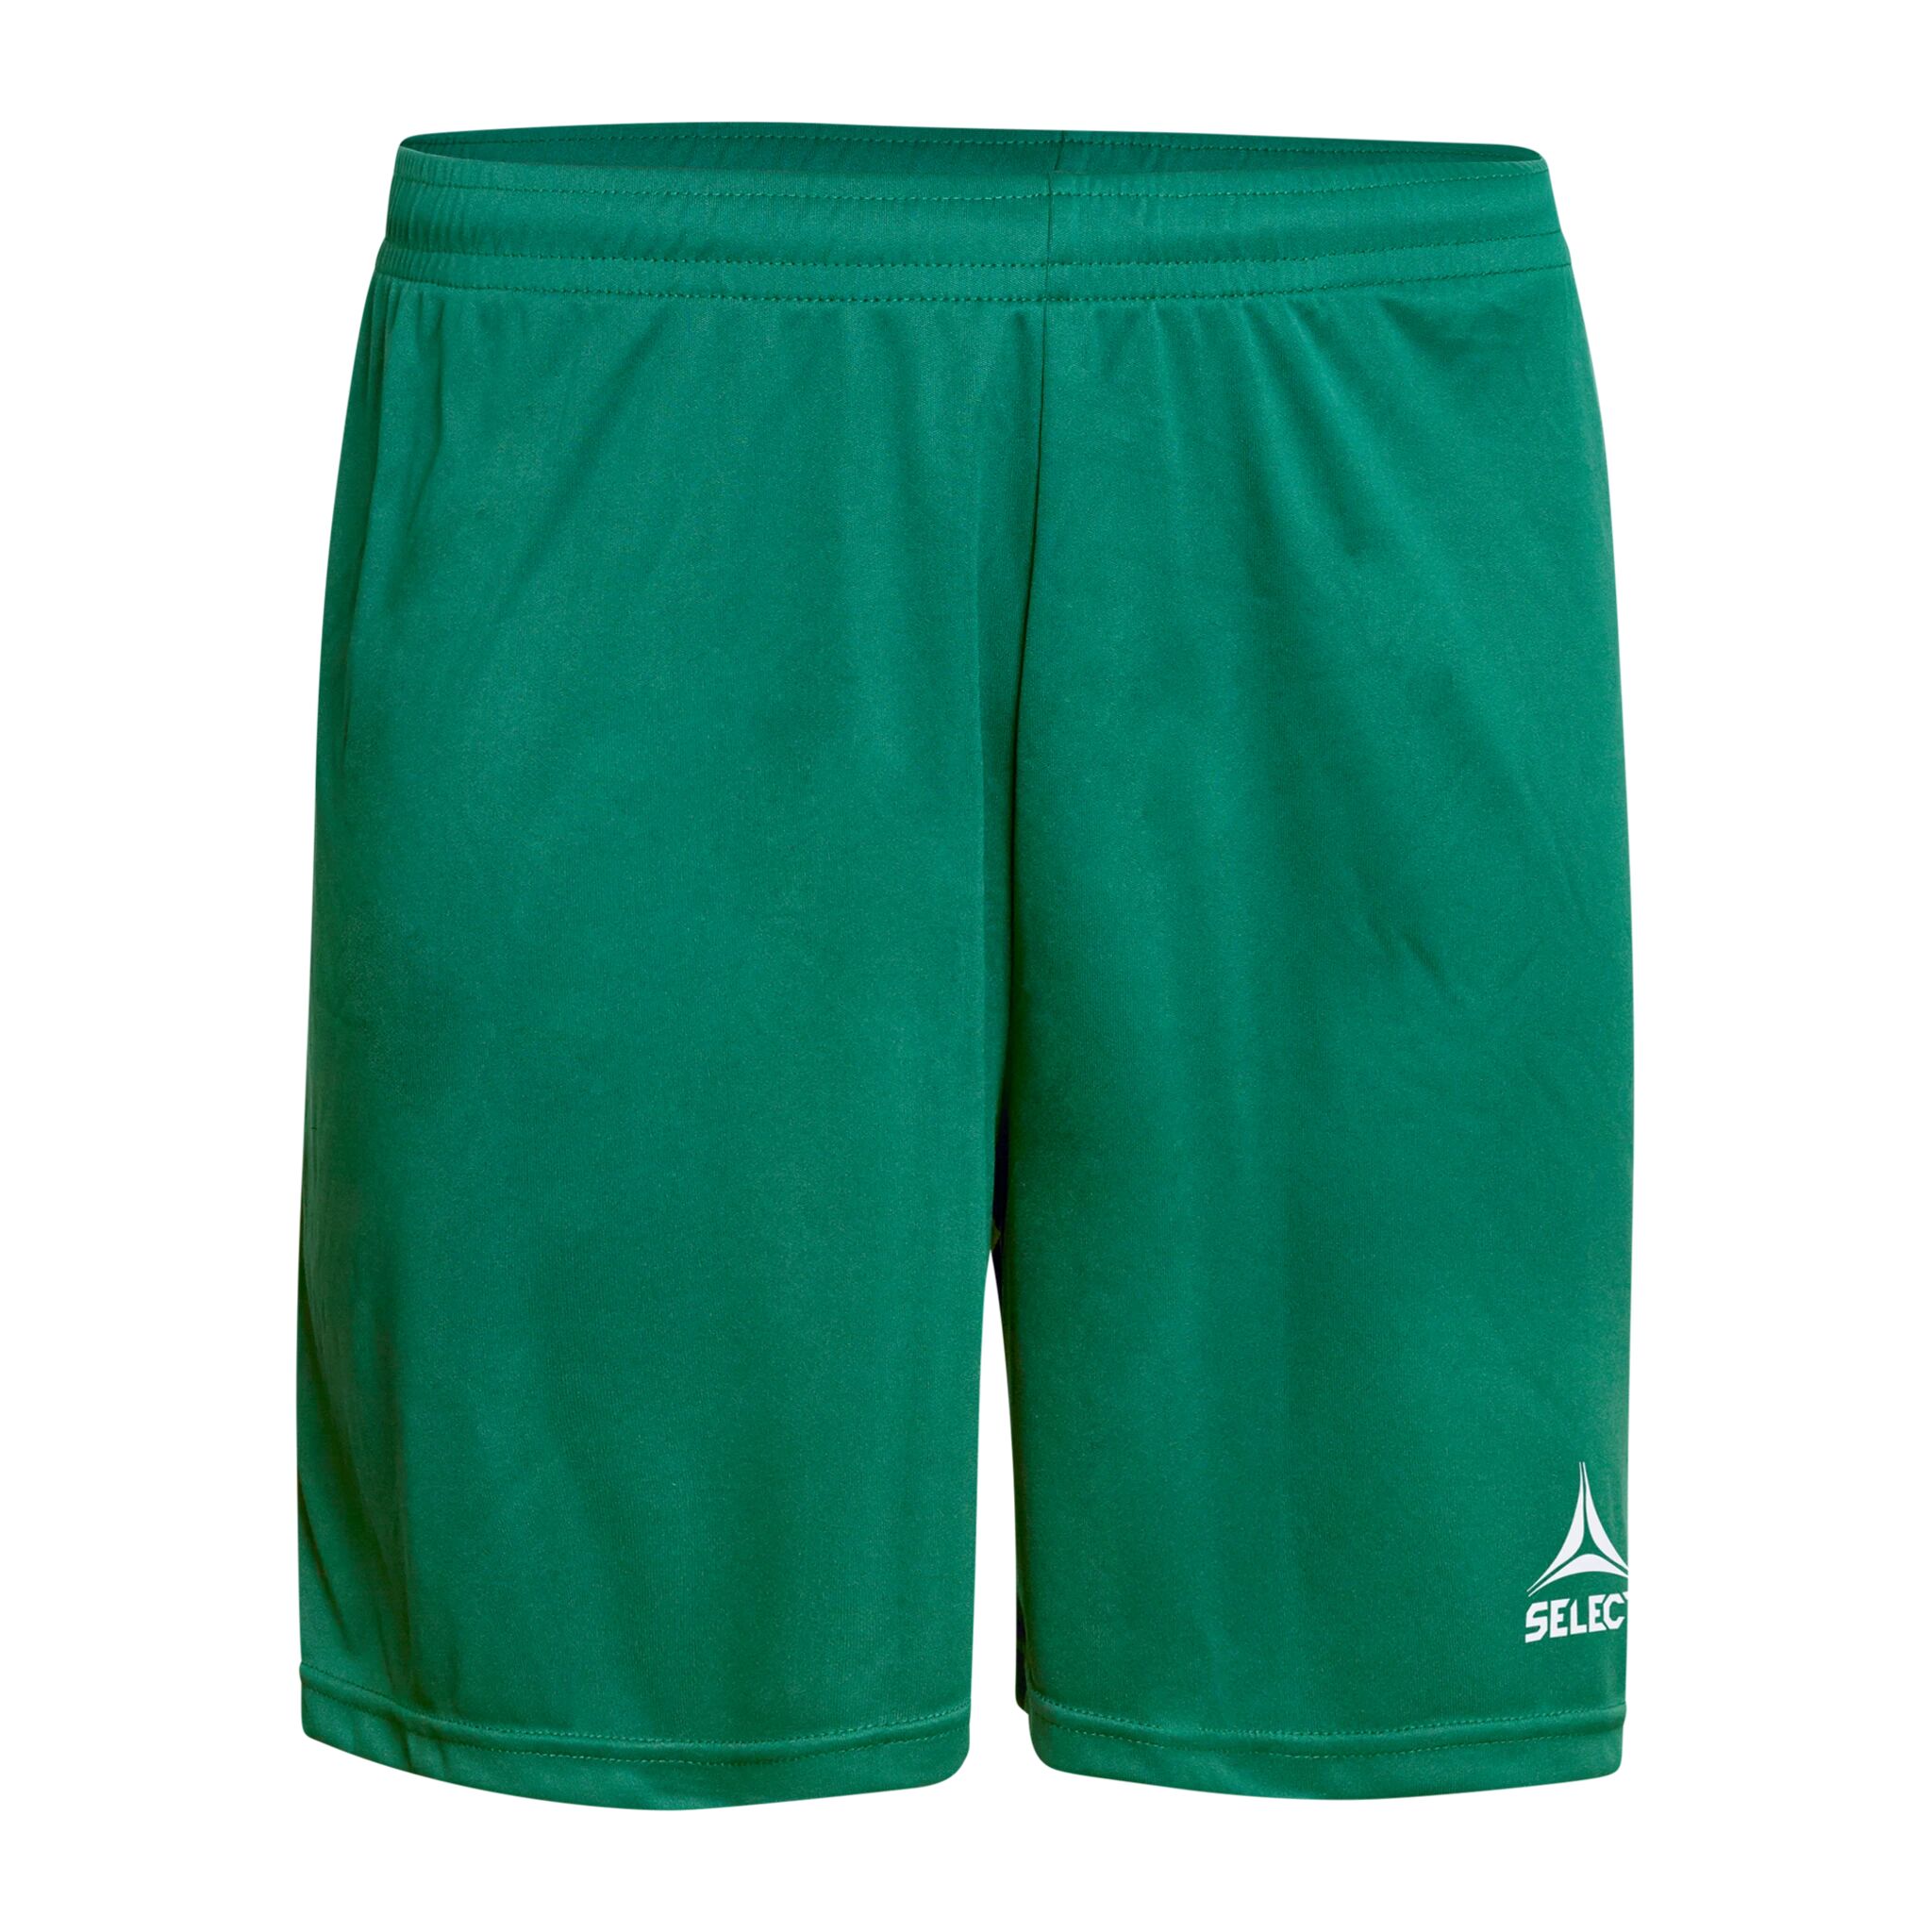 Select Player shorts Pisa, shorts senior XL Green